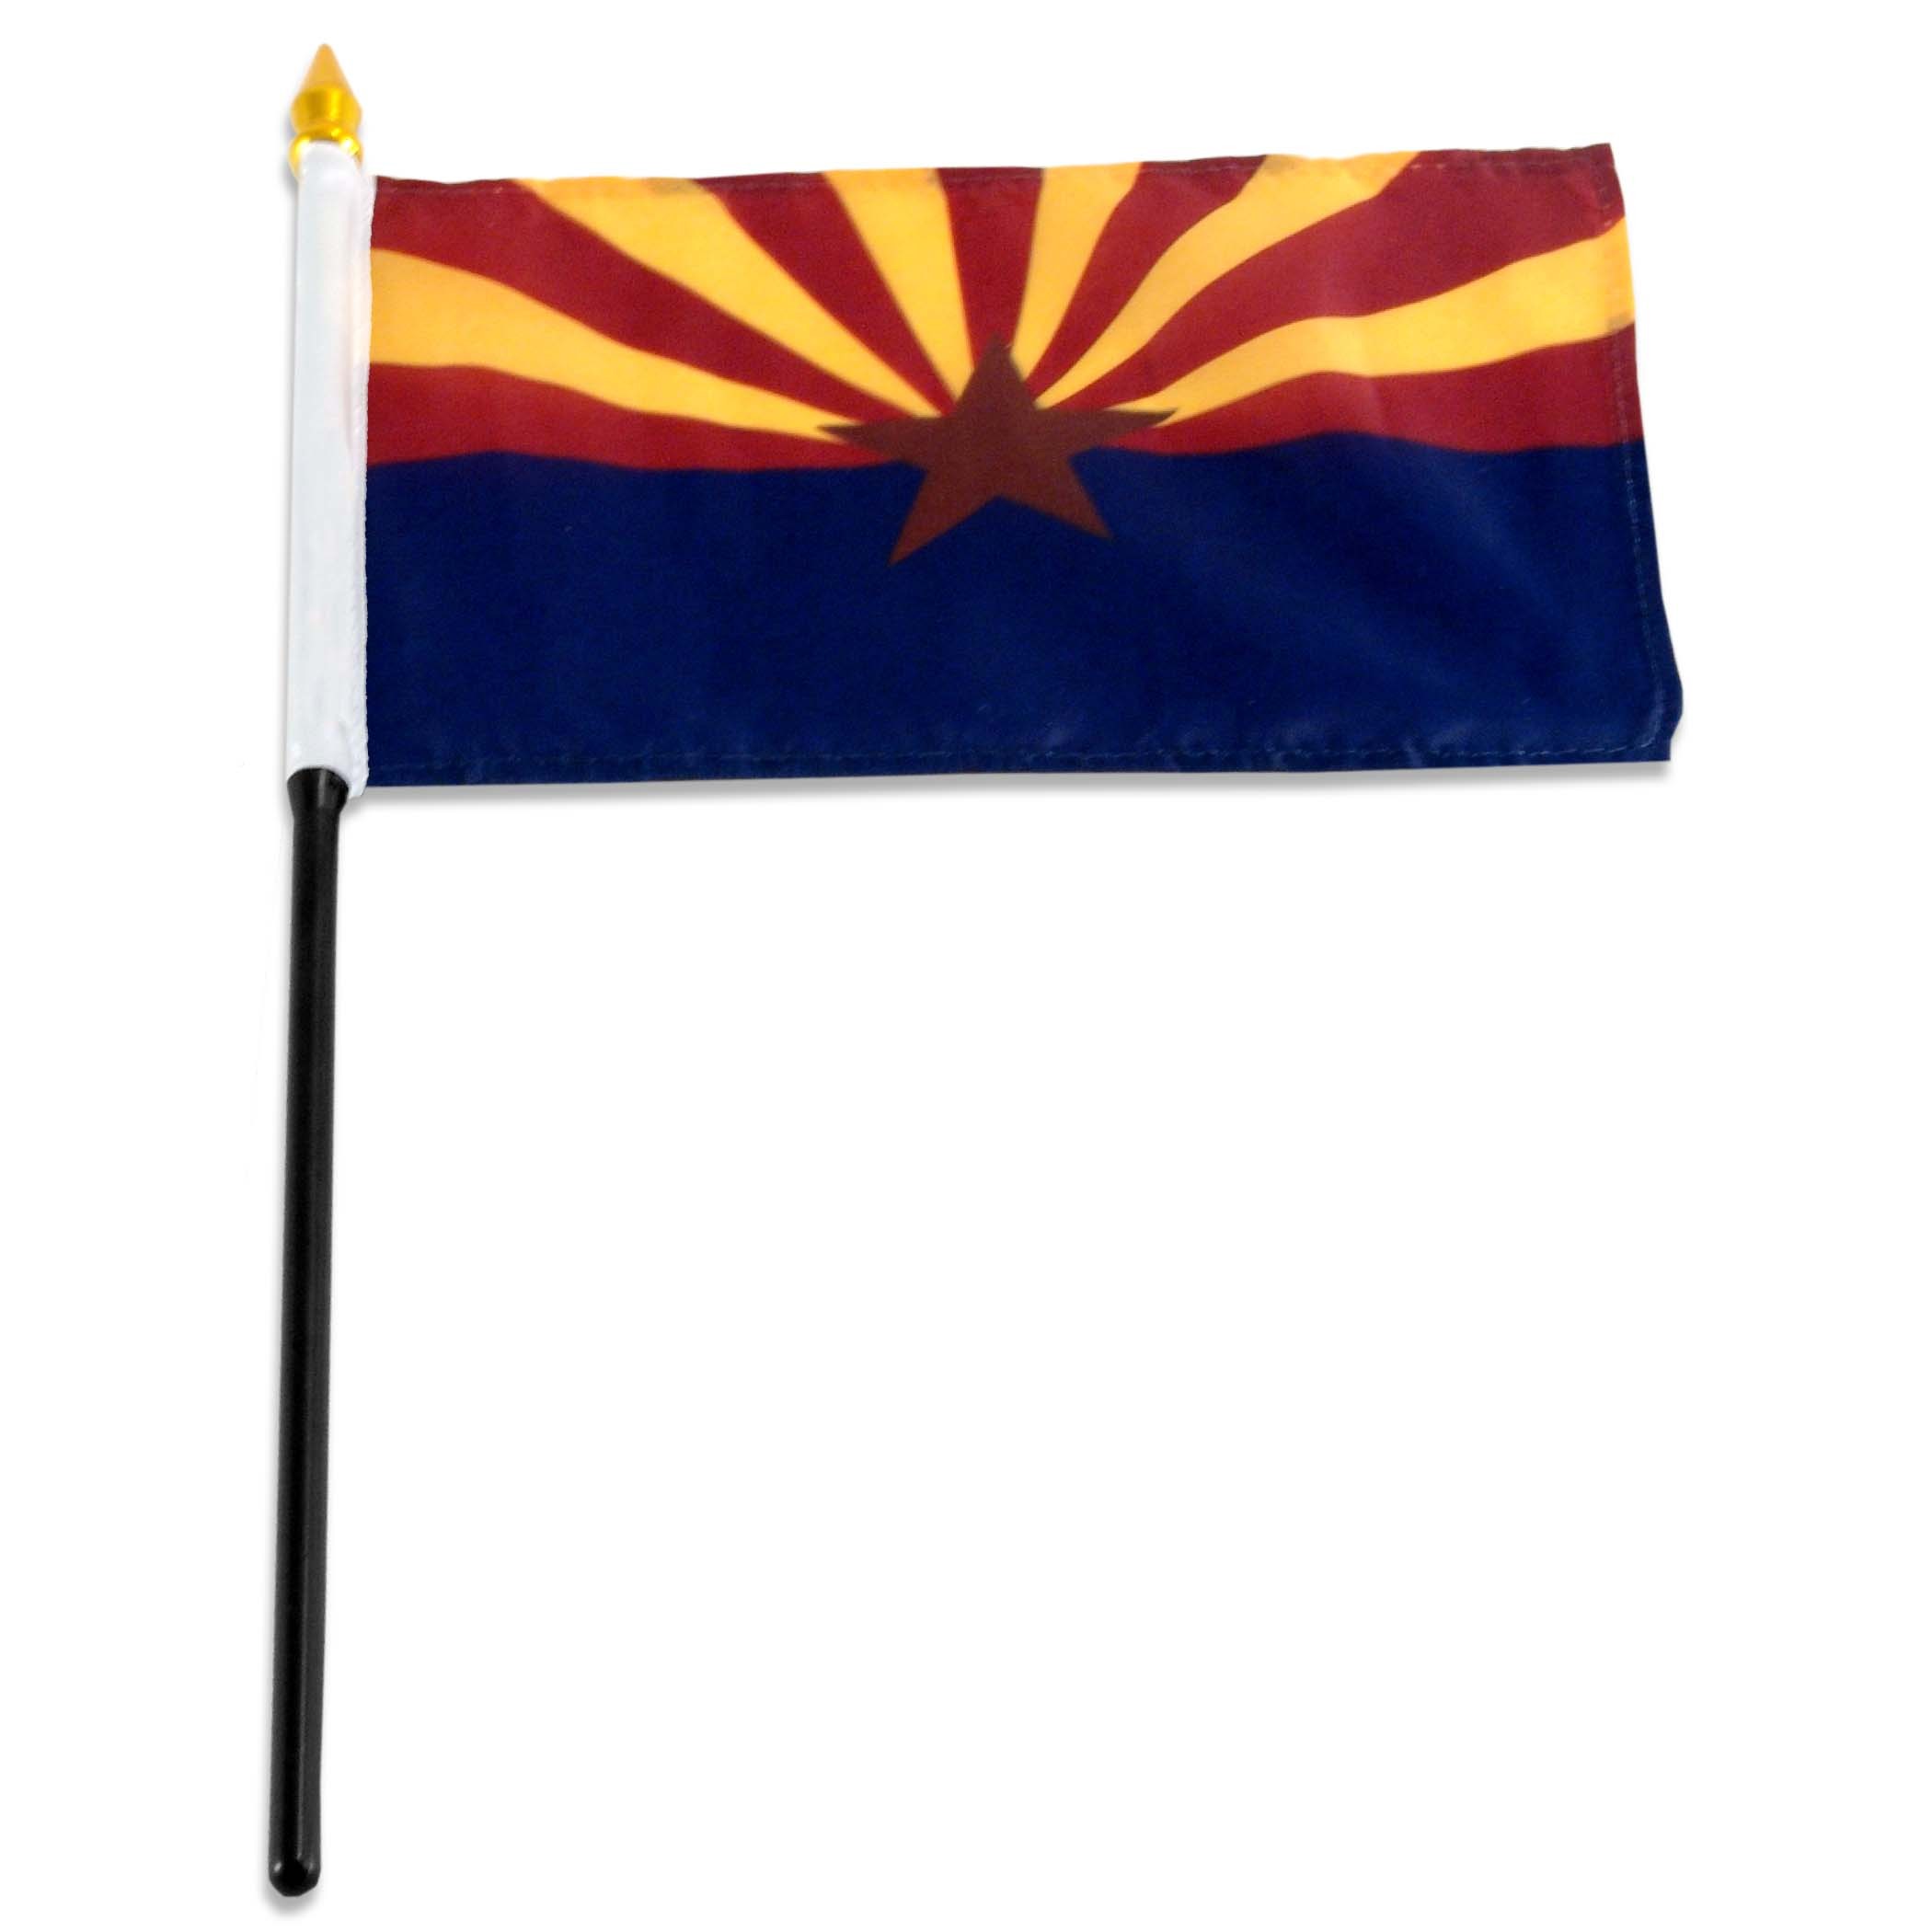 Arizona flag 4 x 6 inch